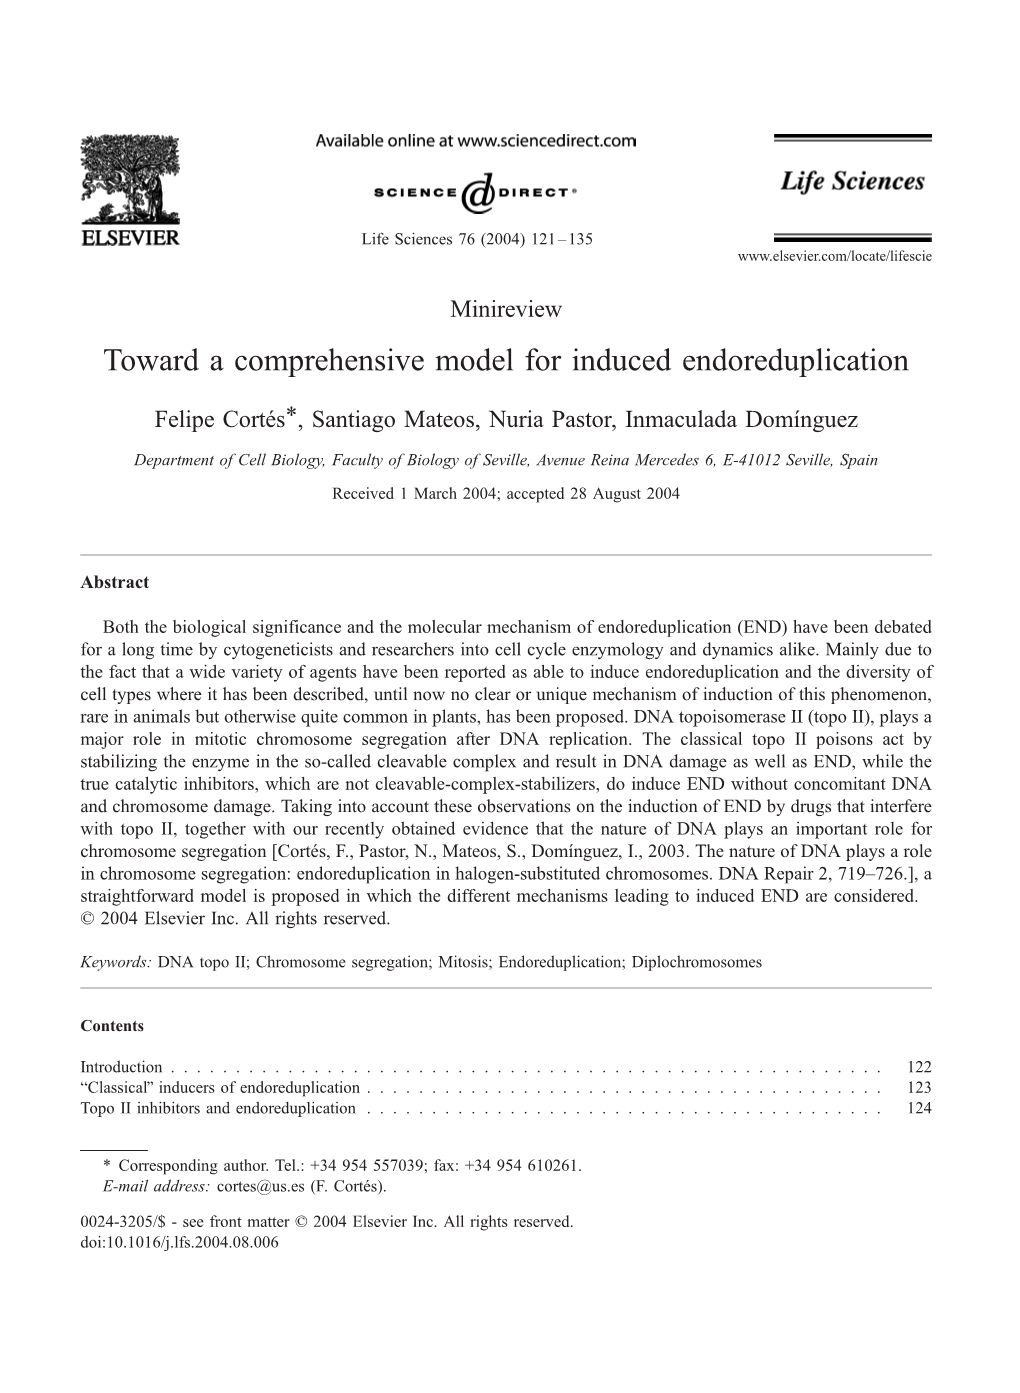 Toward a Comprehensive Model for Induced Endoreduplication